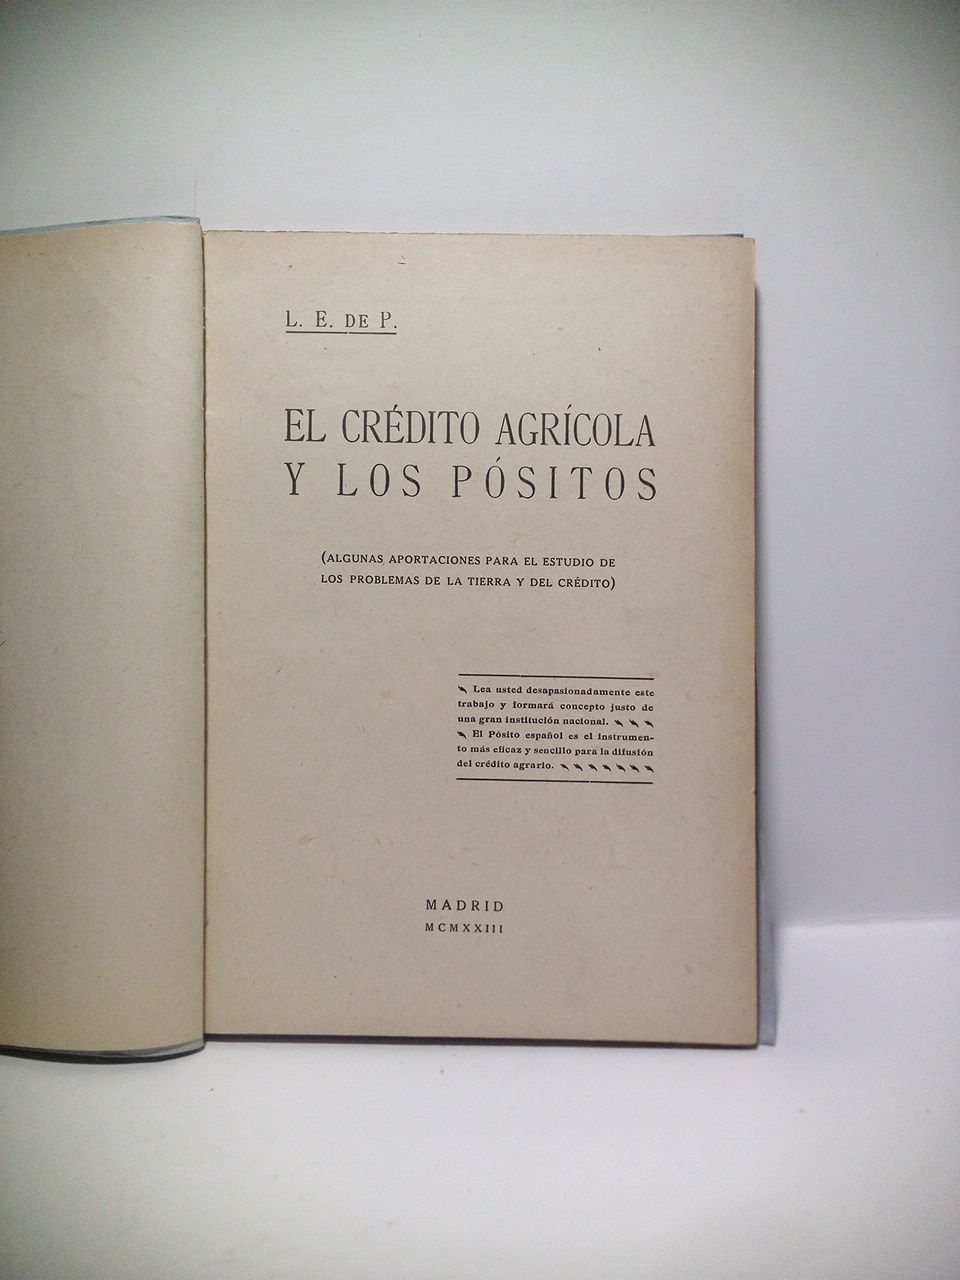 L. E. de P. - El Crdito Agrcola y los Psitos. (Algunas aportaciones para el estudio de los problemas de la tierra y del crdito)